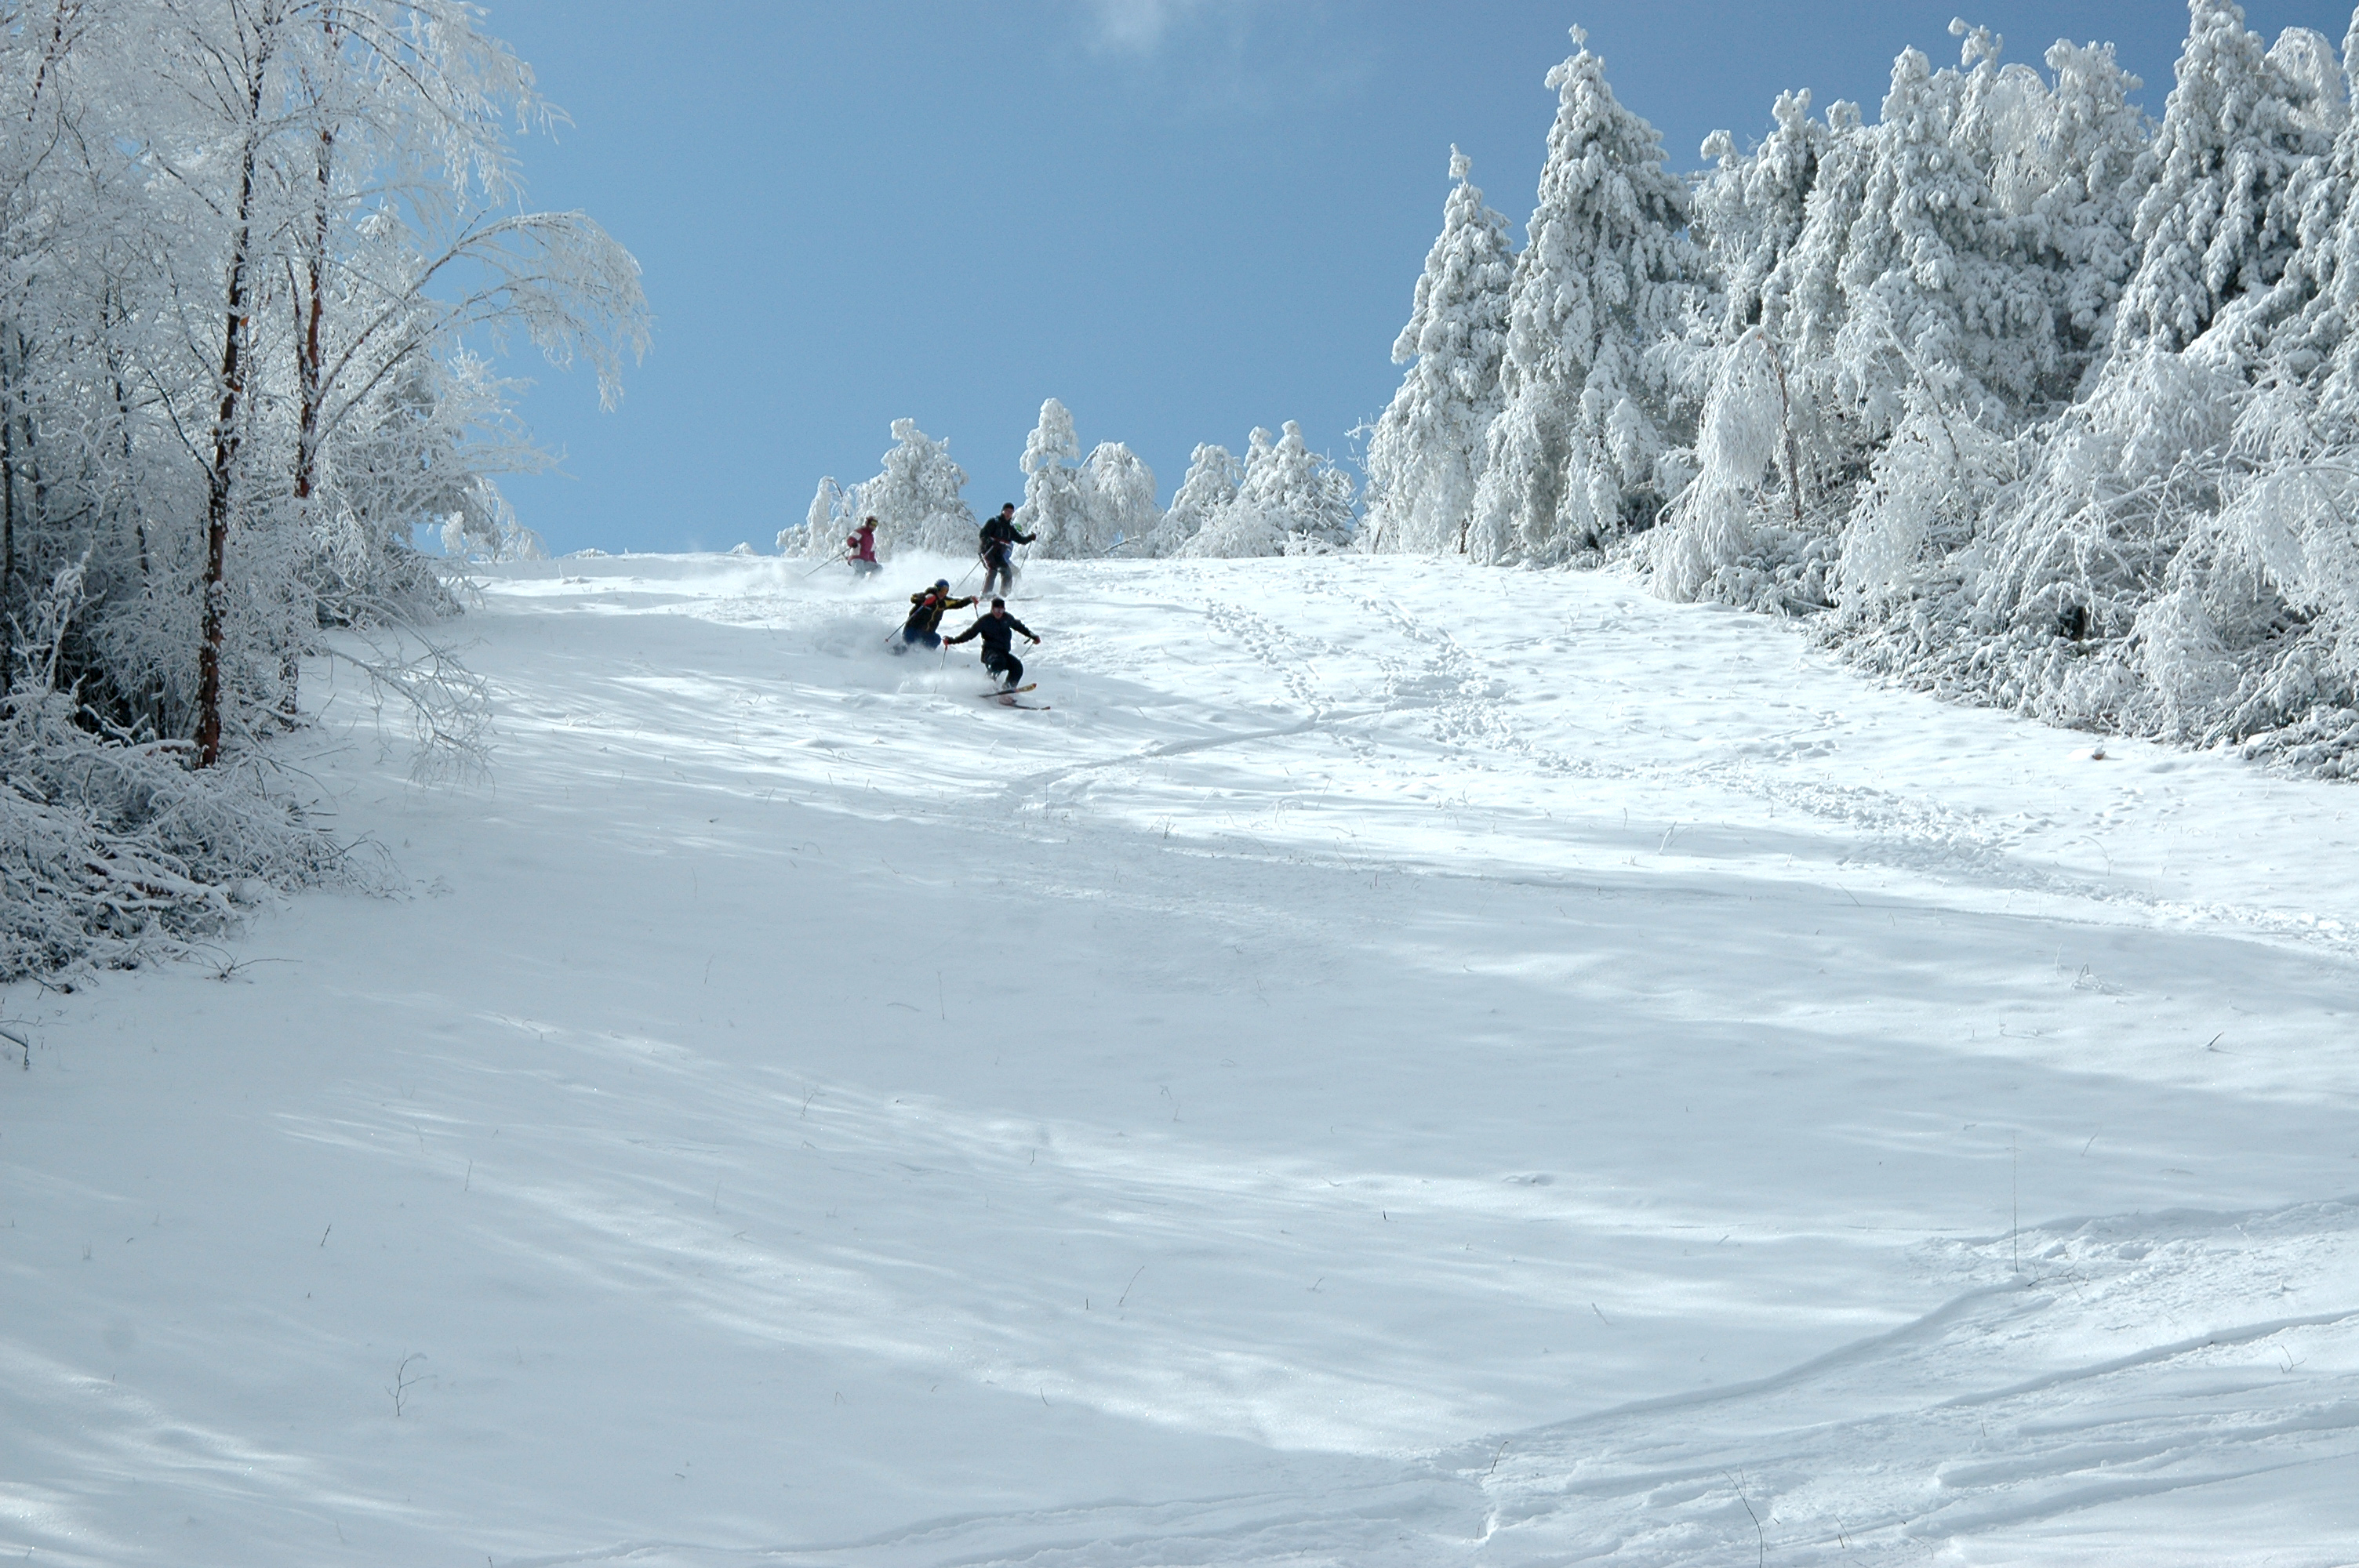 可以自找图片,反面文字图片介绍 附件: 神农架国际滑雪场